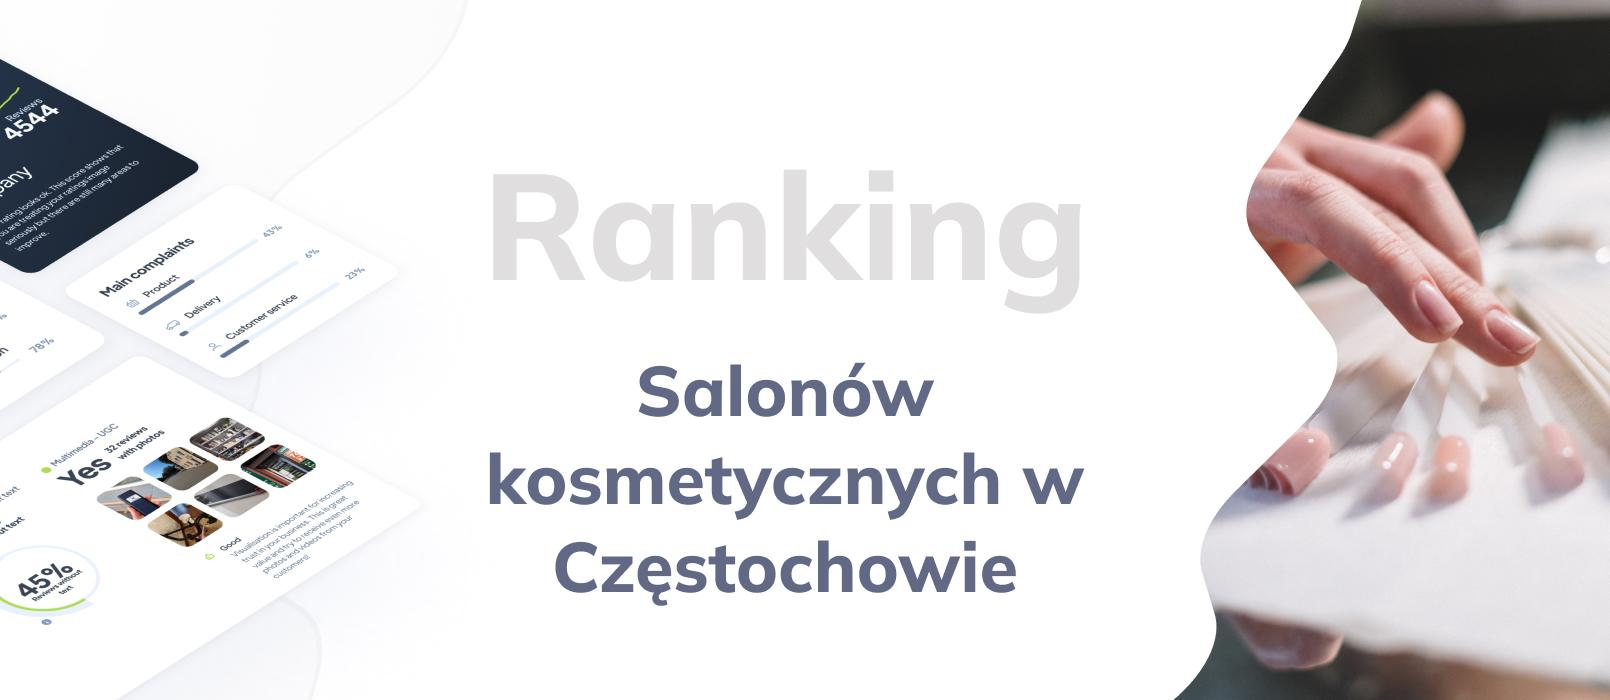 Salony kosmetyczne w  Częstochowie - ranking TOP 10